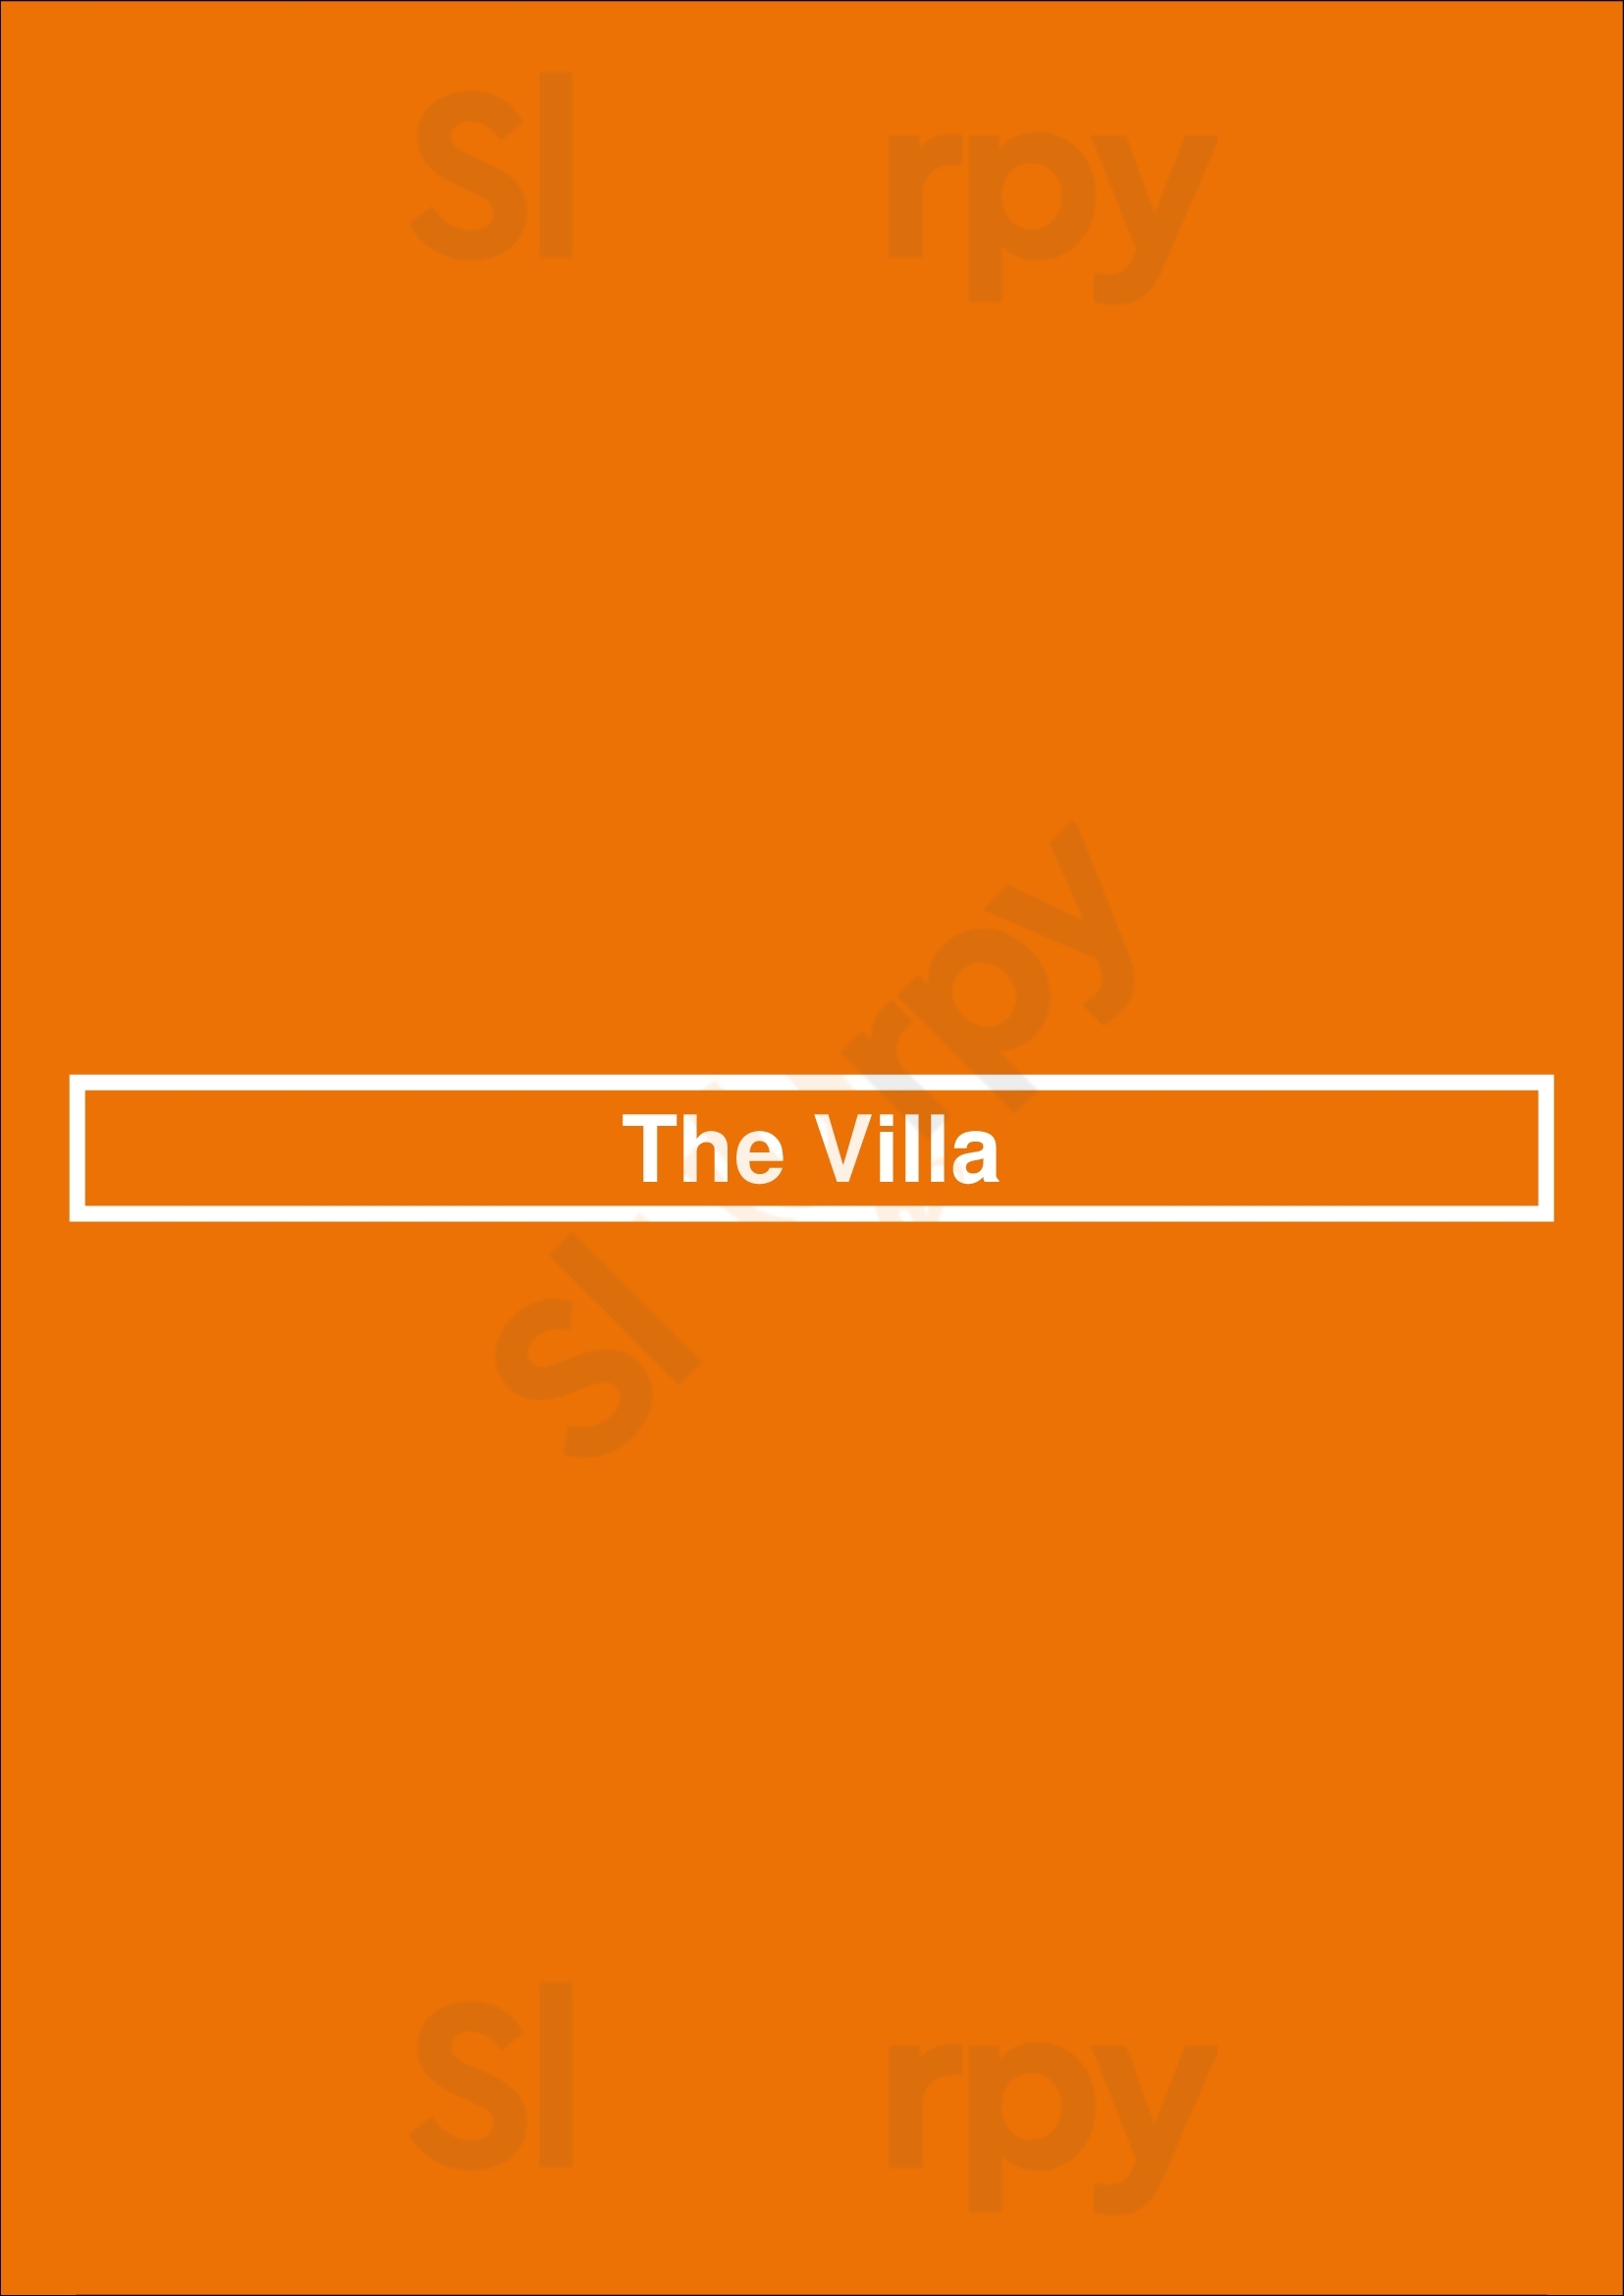 The Villa Whitby Menu - 1